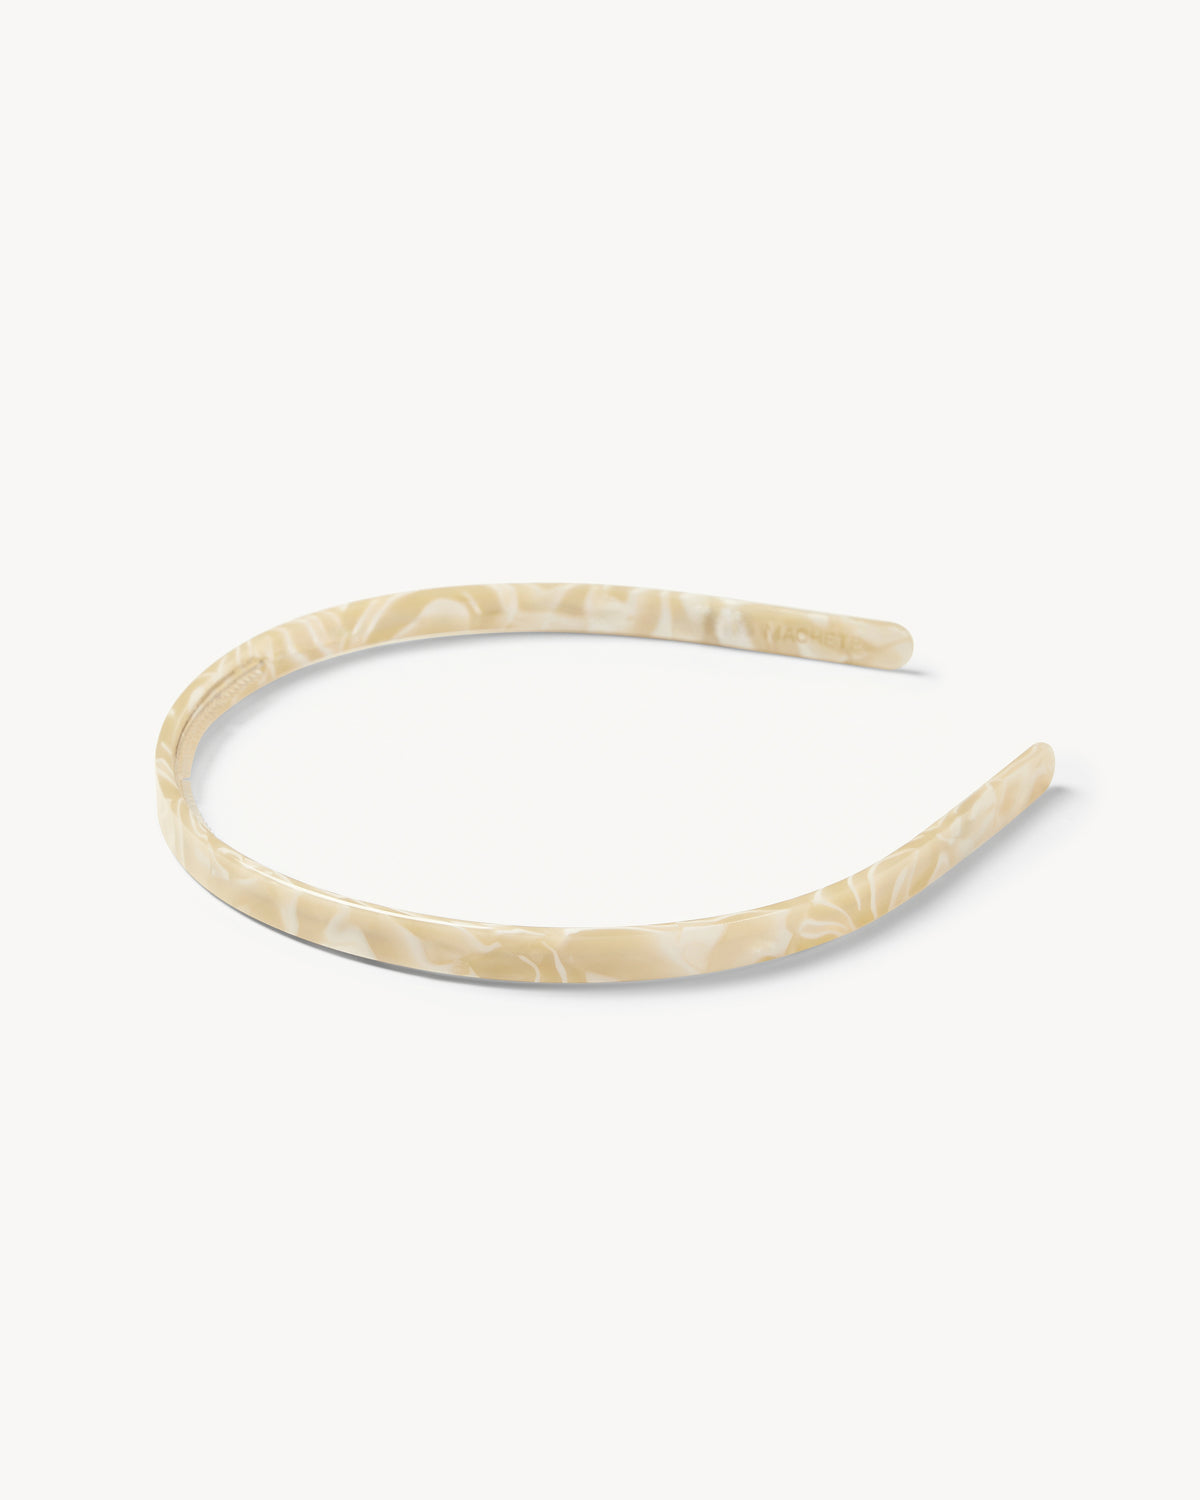 Ultralight Thin Headband in Ivory